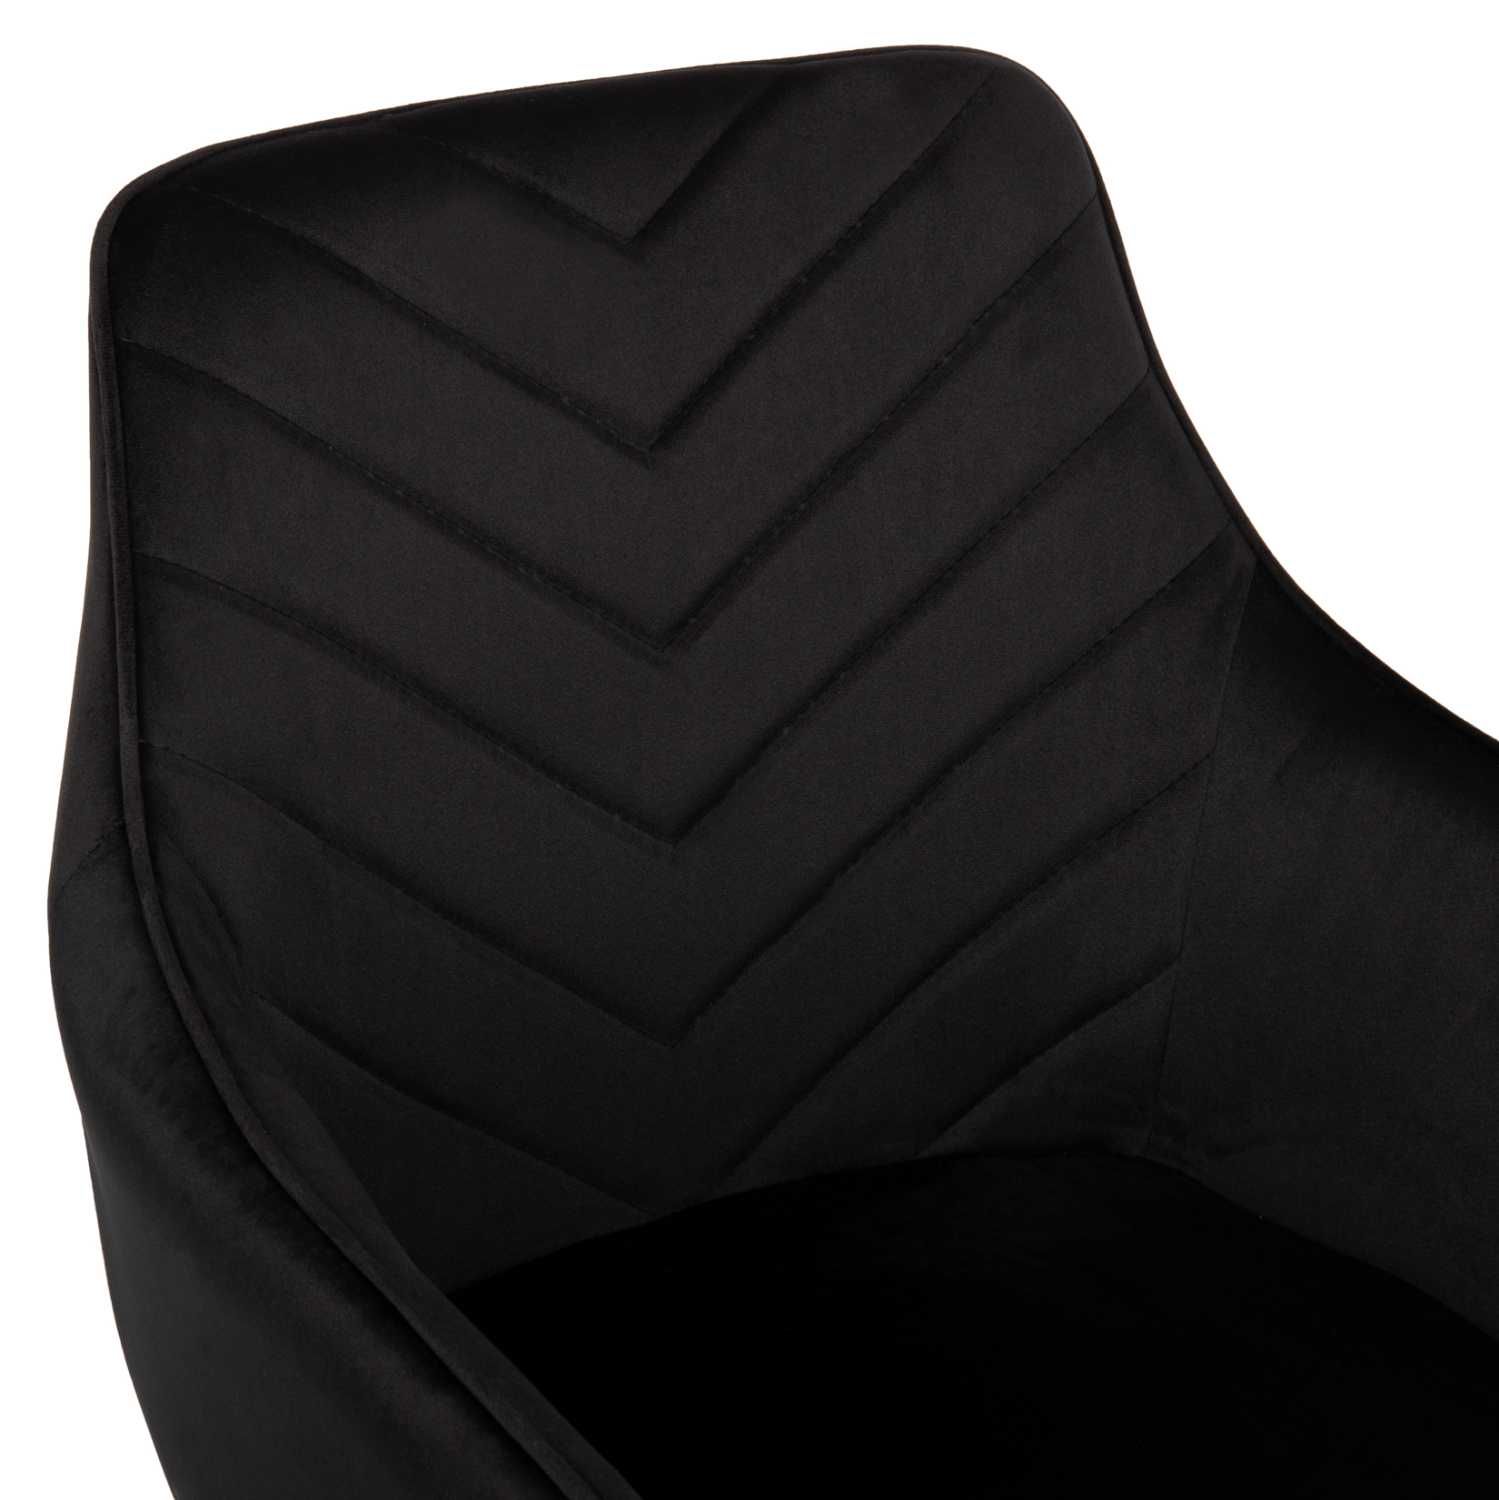 Кресло LATRELL, Черно кадиве, Промо цена, 55x57x84см.